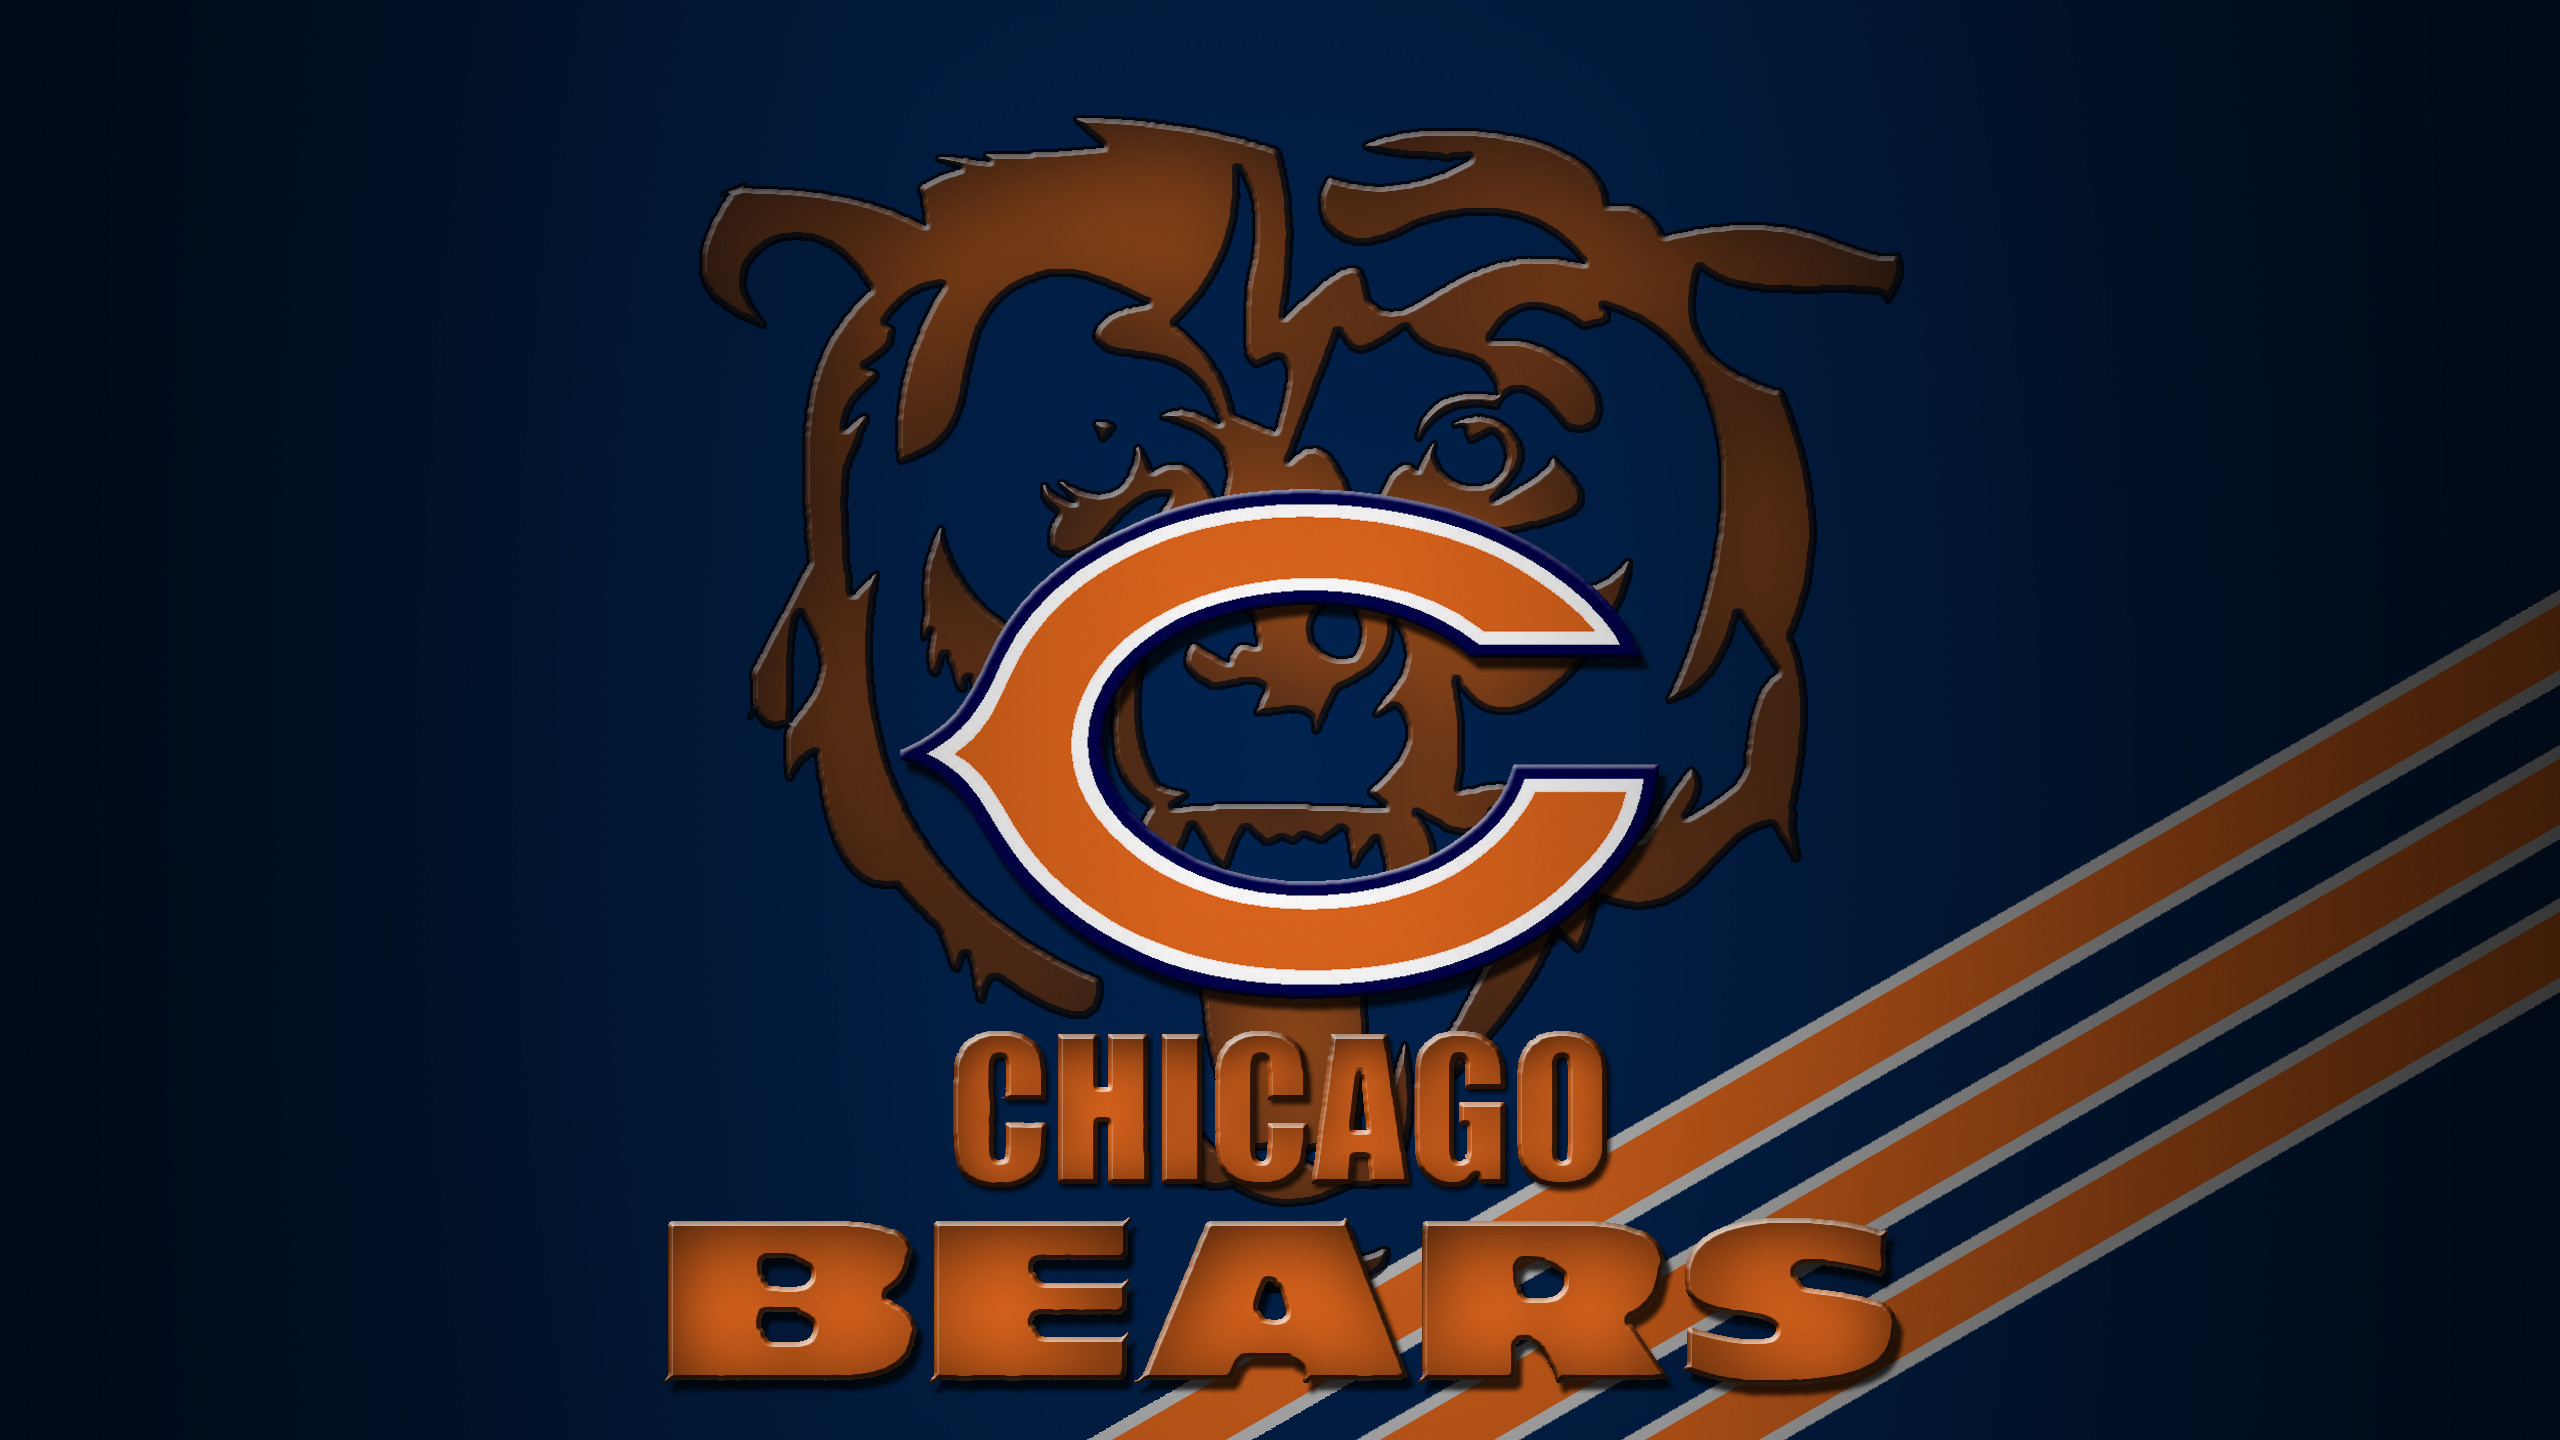 Chicago Bears iPhone Wallpapers  PixelsTalkNet